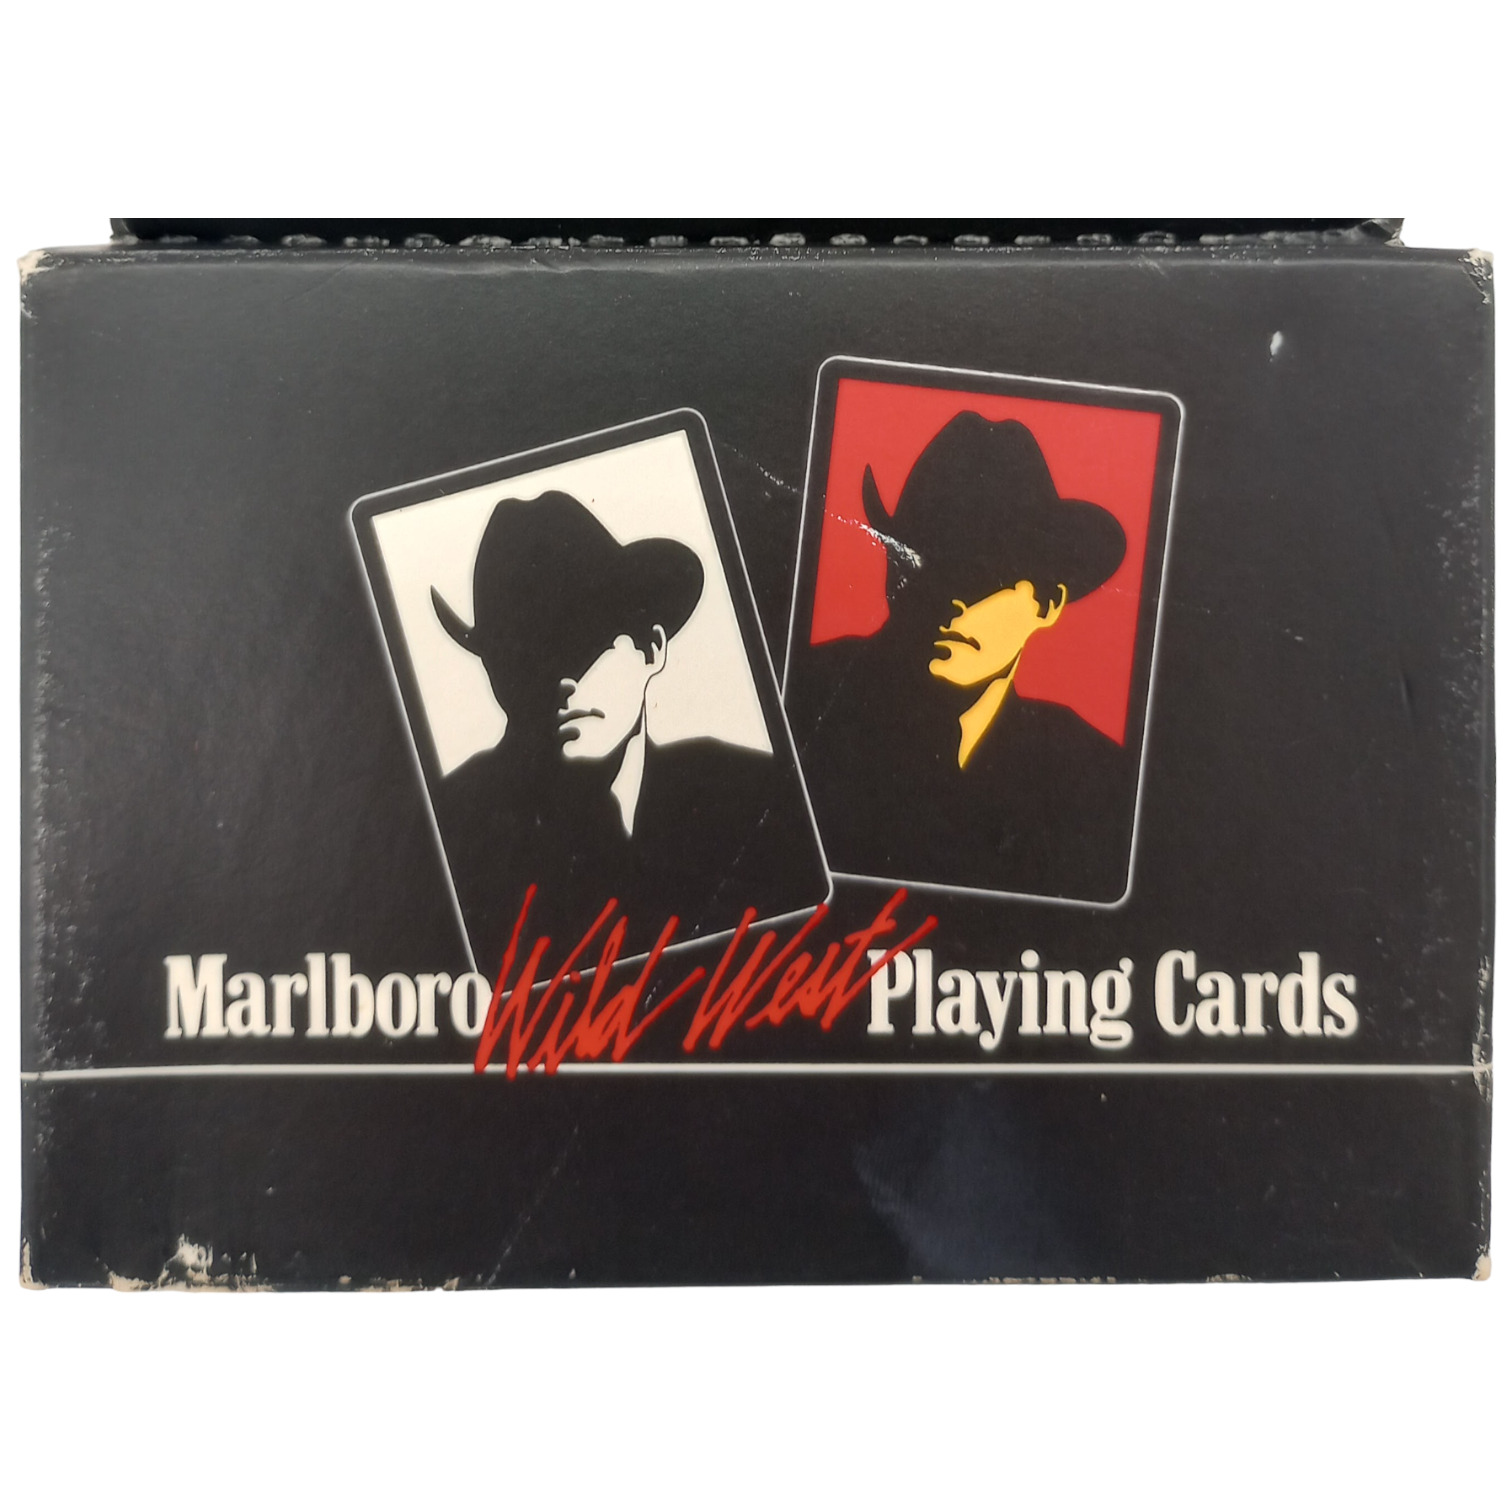 1991 Vintage Marlboro Man Wild West Deck Playing Cards 2 Decks Sealed NEW